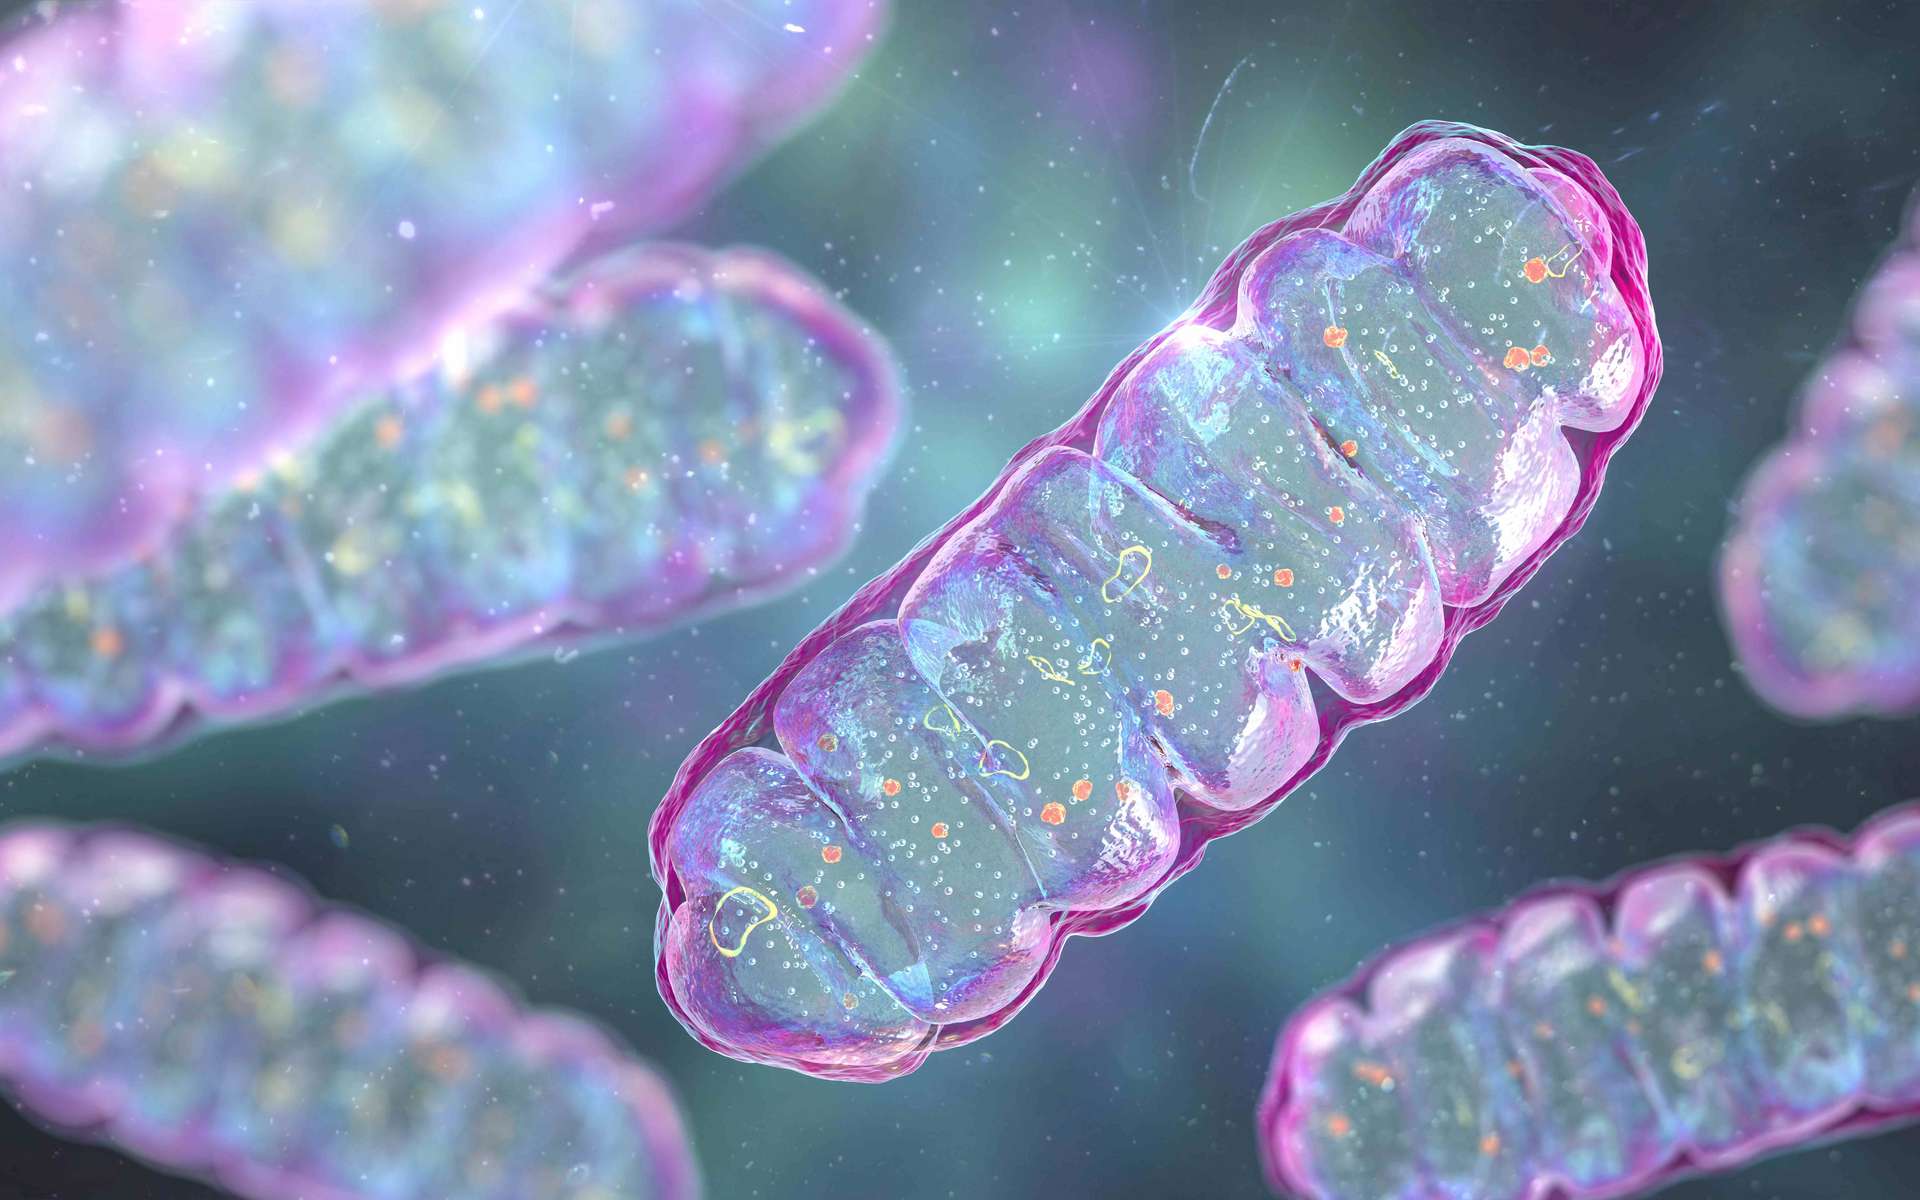 L'ADN Mitochondrial comme nouvelle piste prometteuse pour booster l'immunothérapie contre le cancer